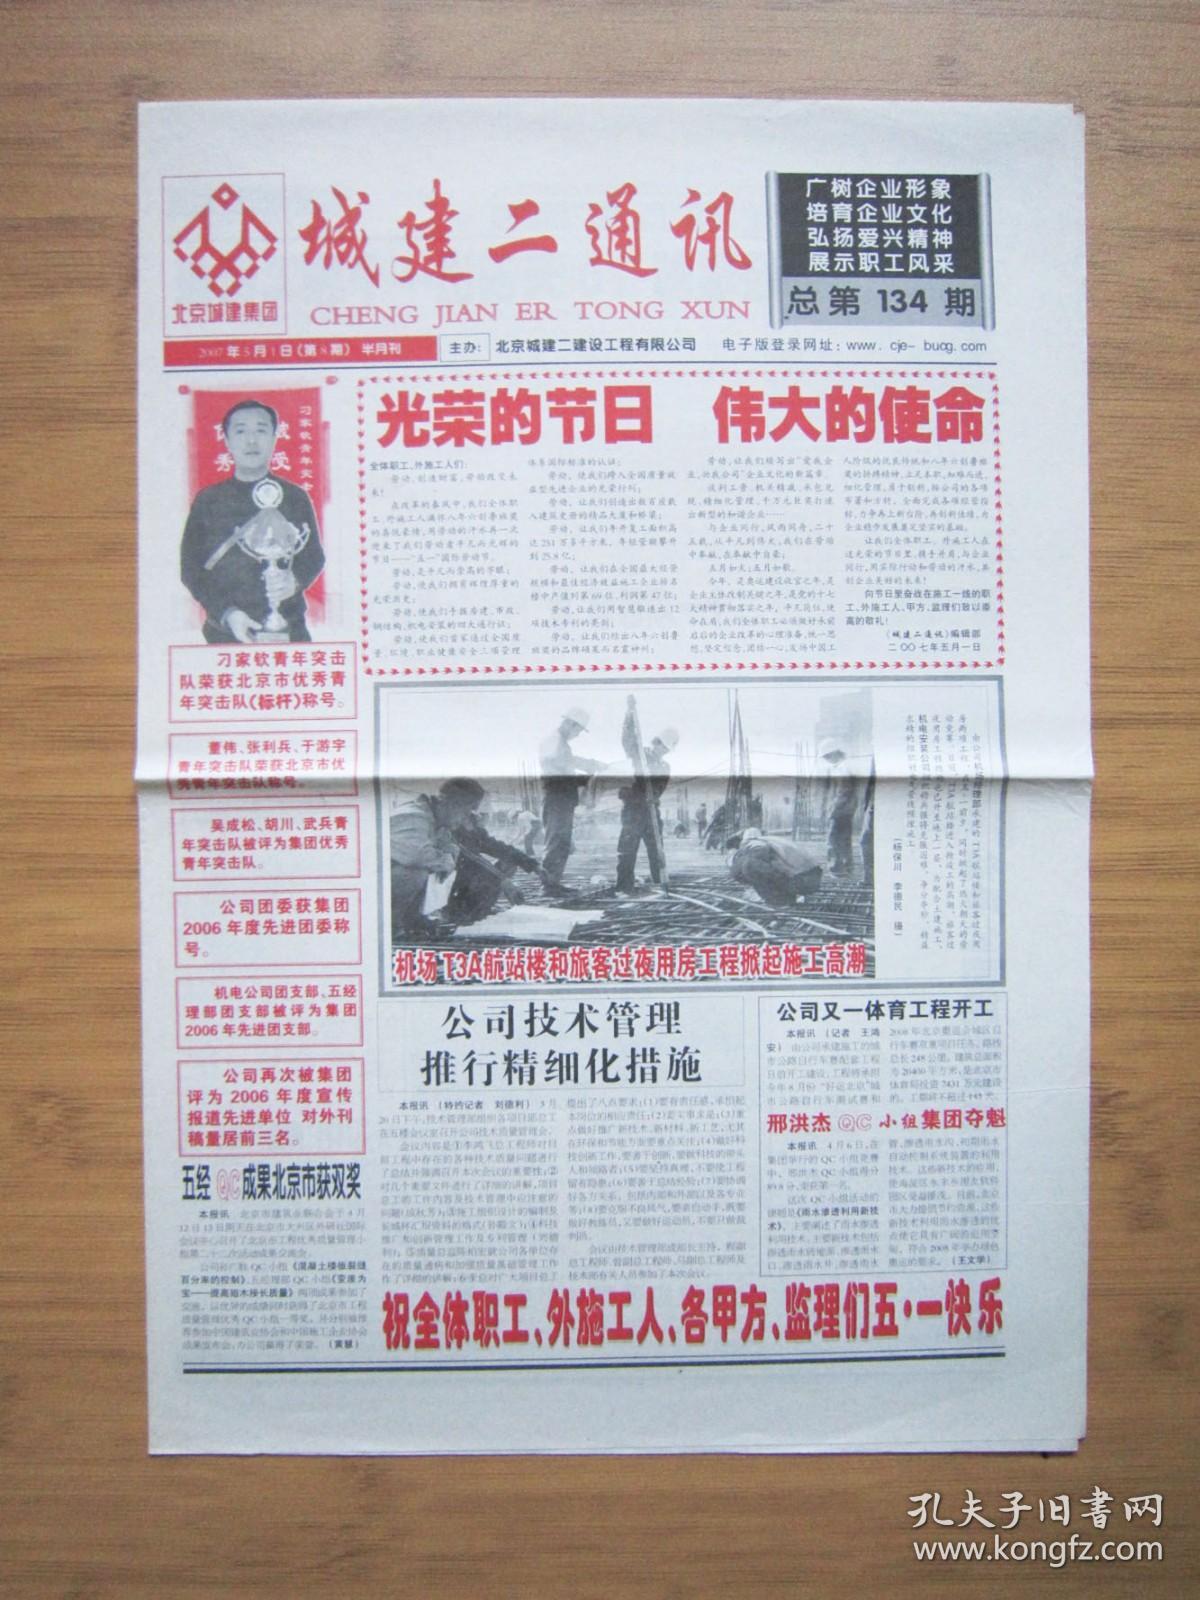 北京报纸——1417、城建二通讯 2007.5.1日